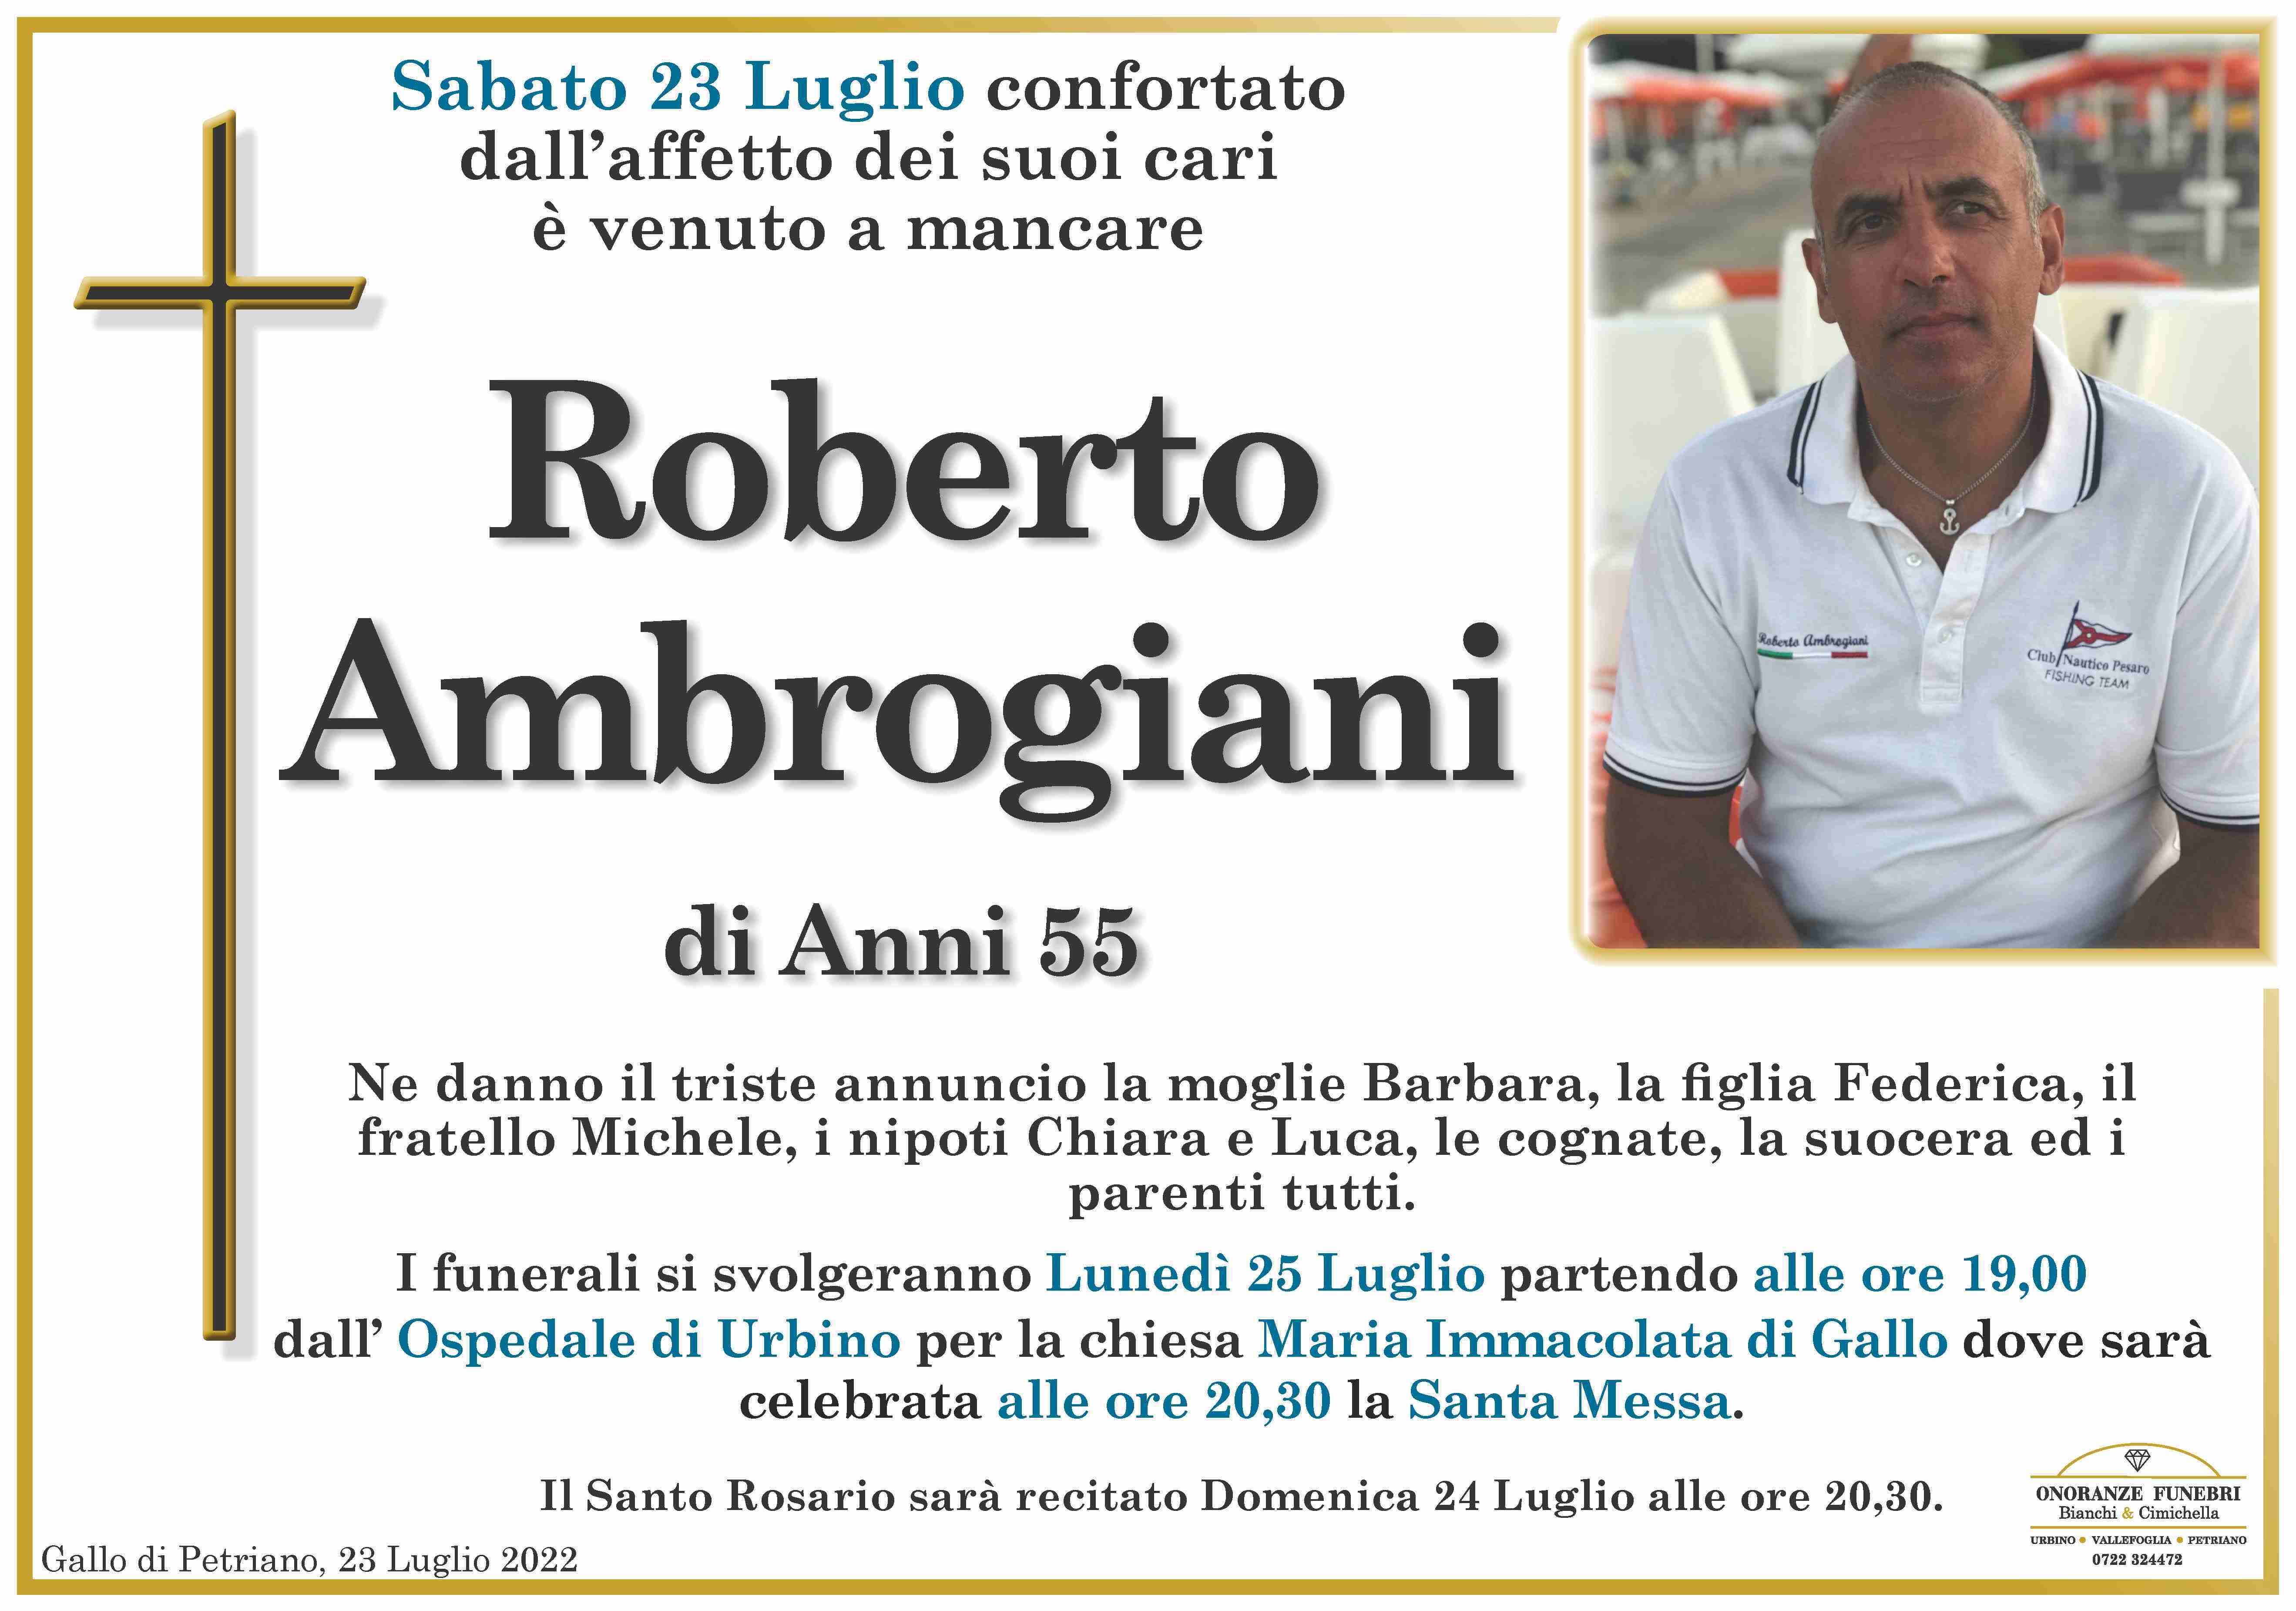 Roberto Ambrogiani